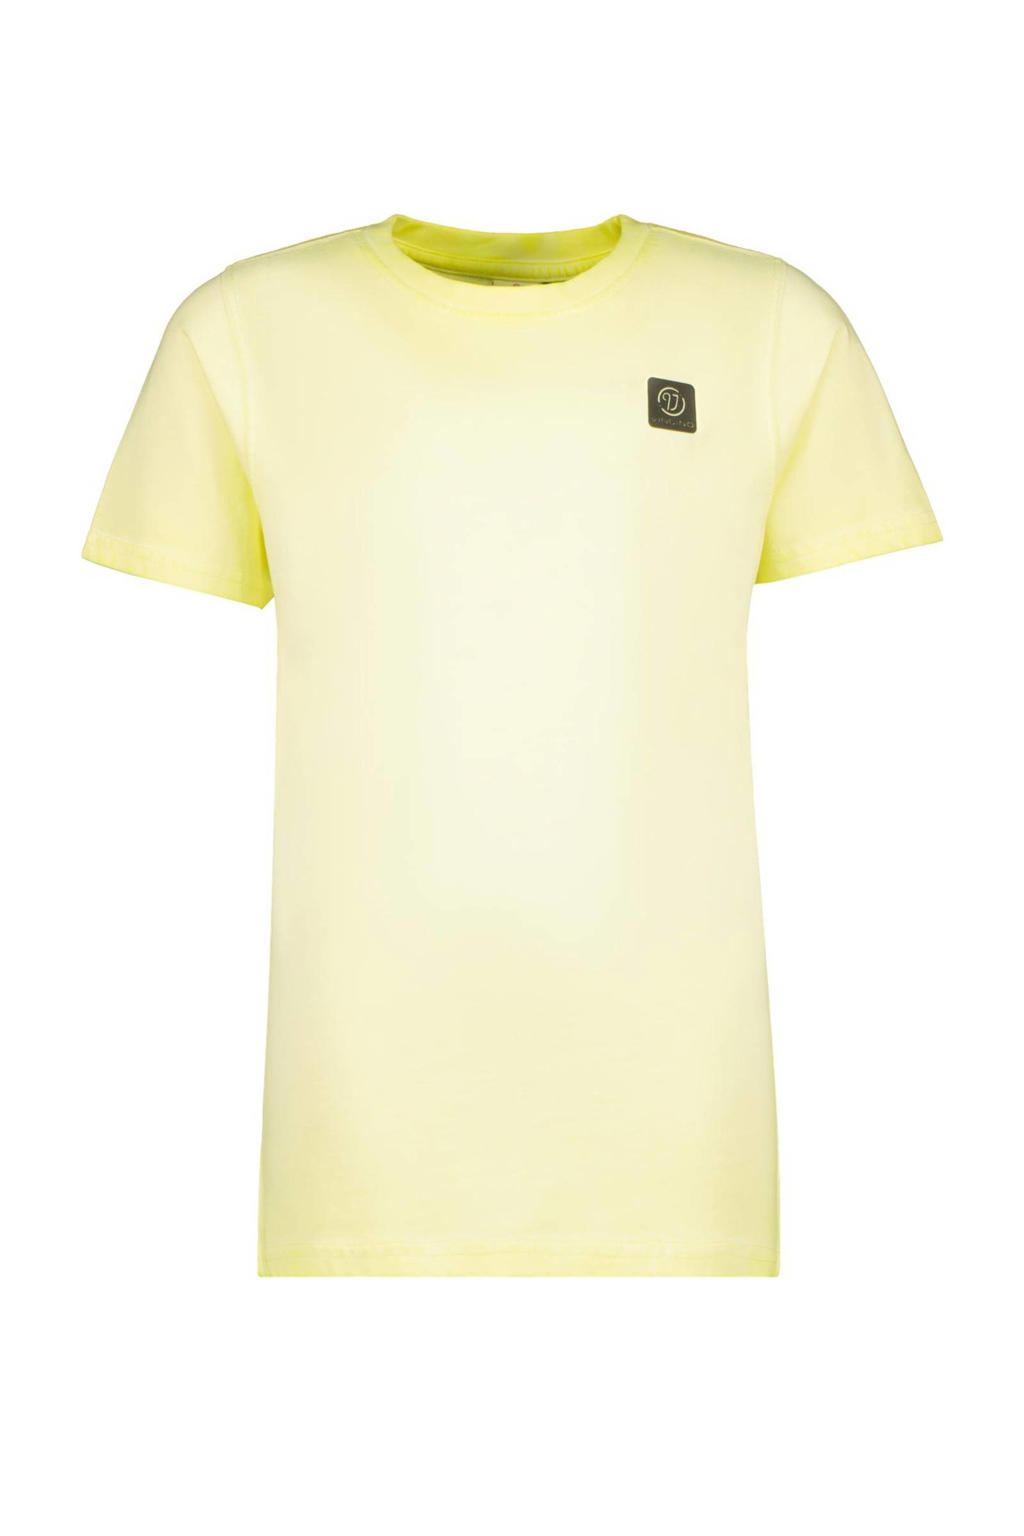 Gele jongens Vingino T-shirt van katoen met korte mouwen en ronde hals